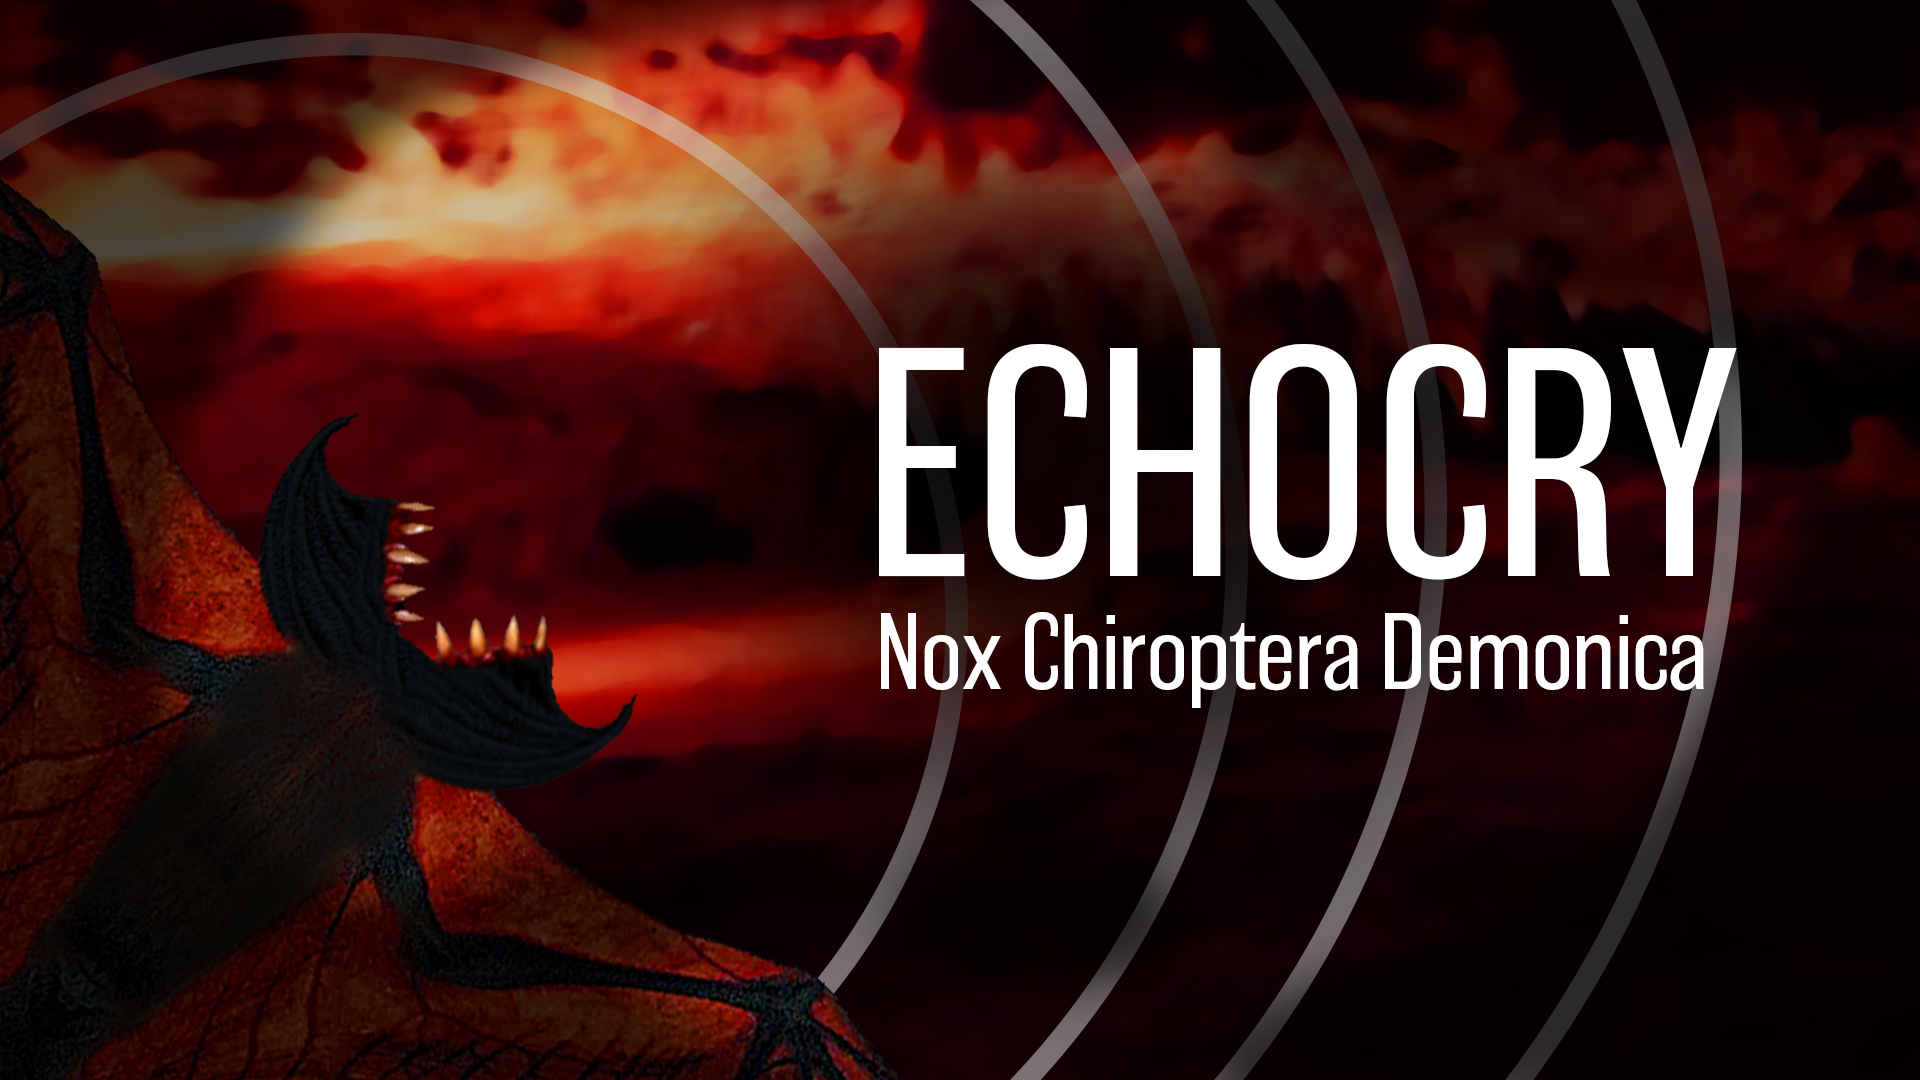 Echocry: Nox Chiroptera Demonica